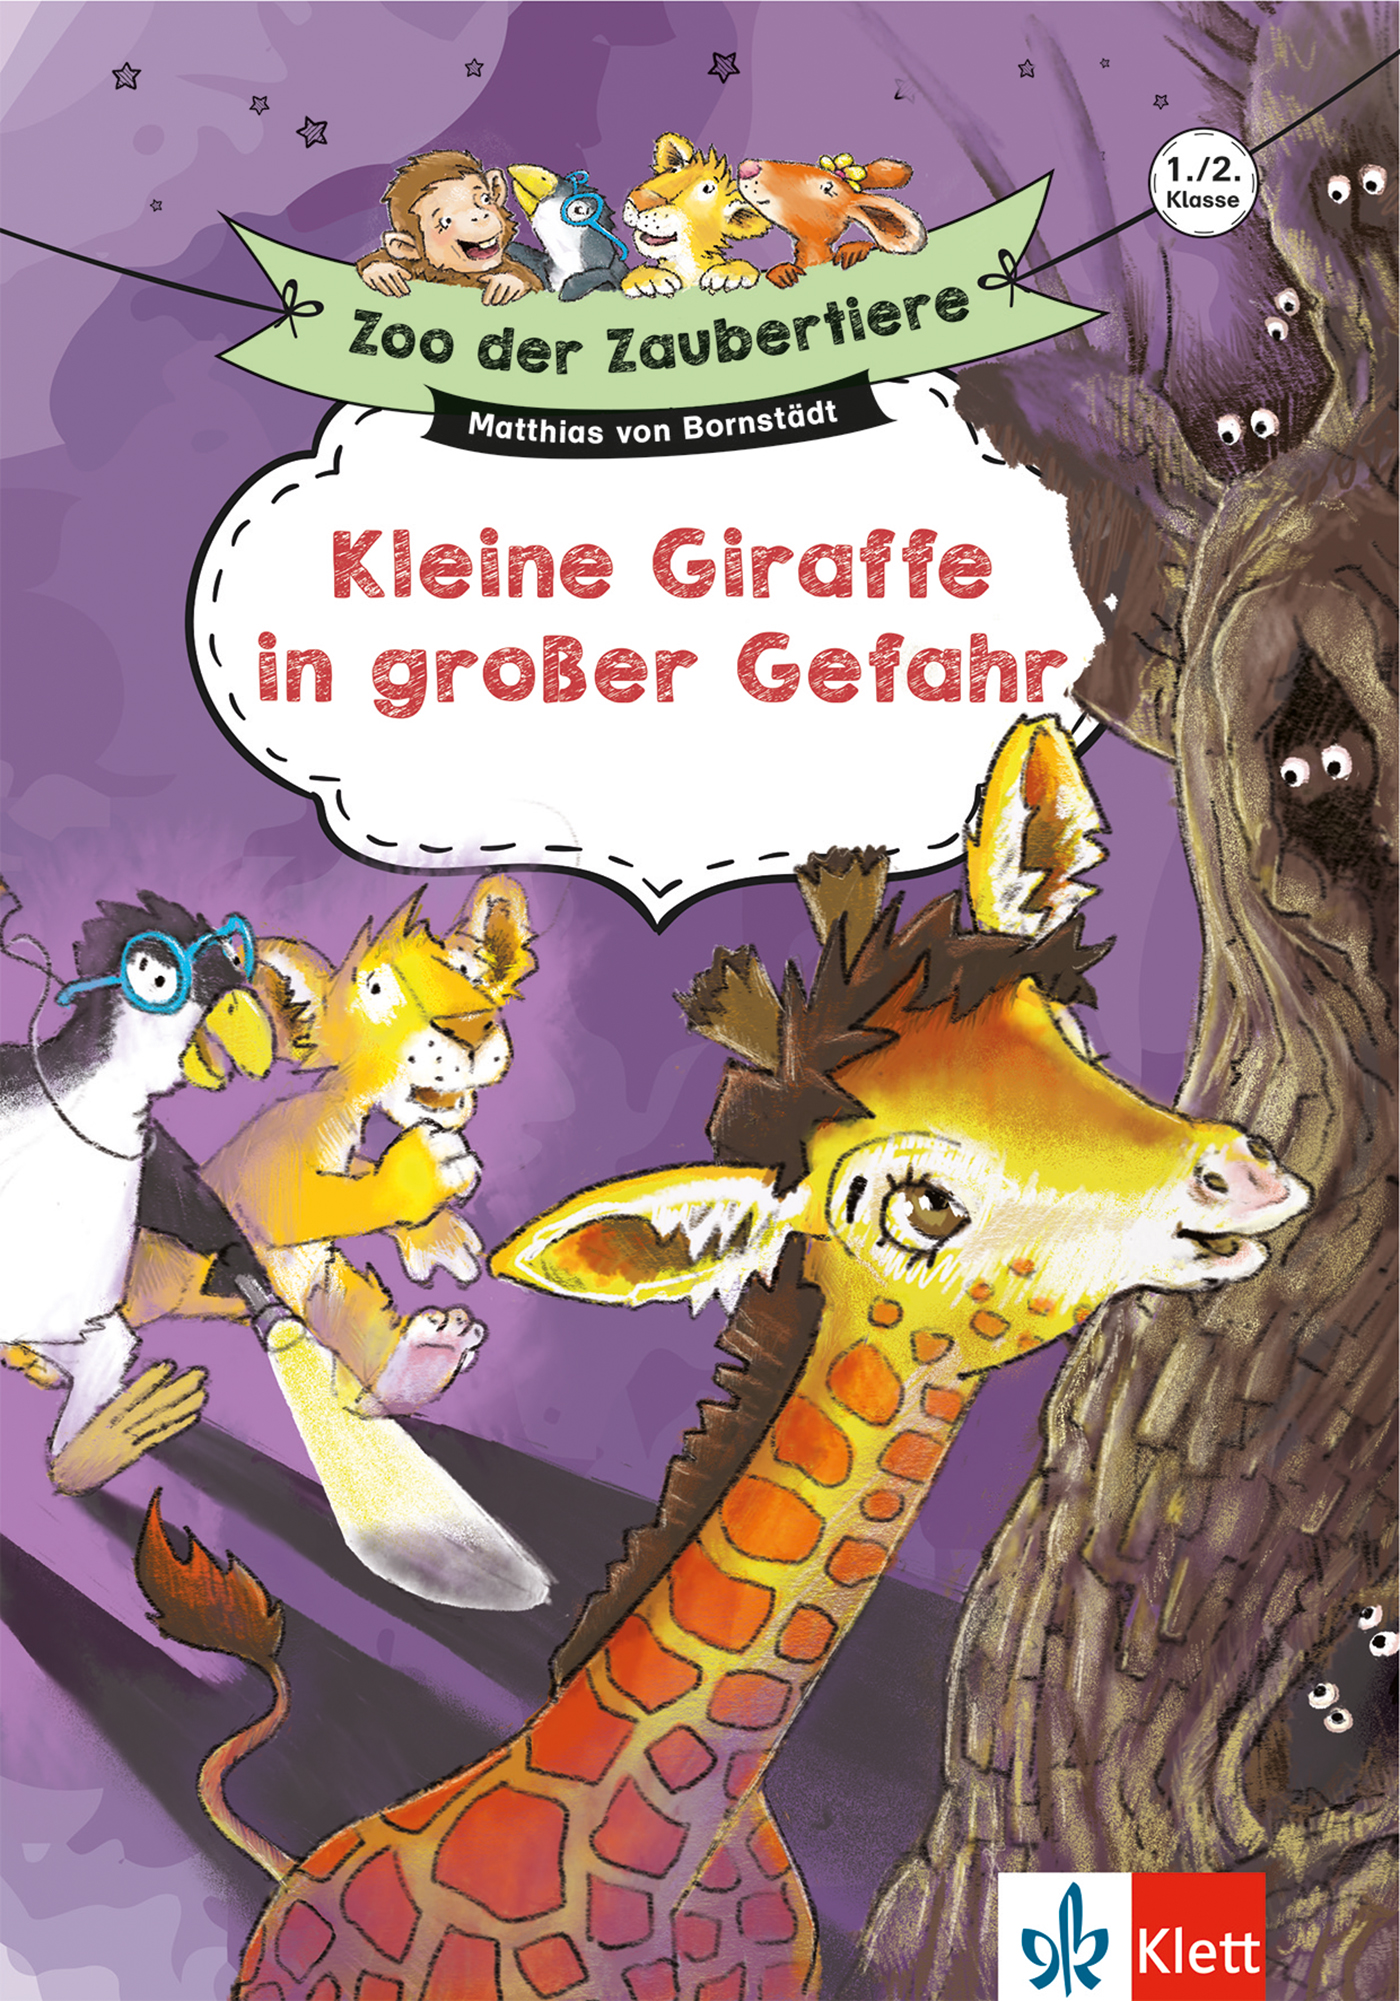 Klett Zoo der Zaubertiere: Kleine Giraffe in großer Gefahr 1./2. Klasse